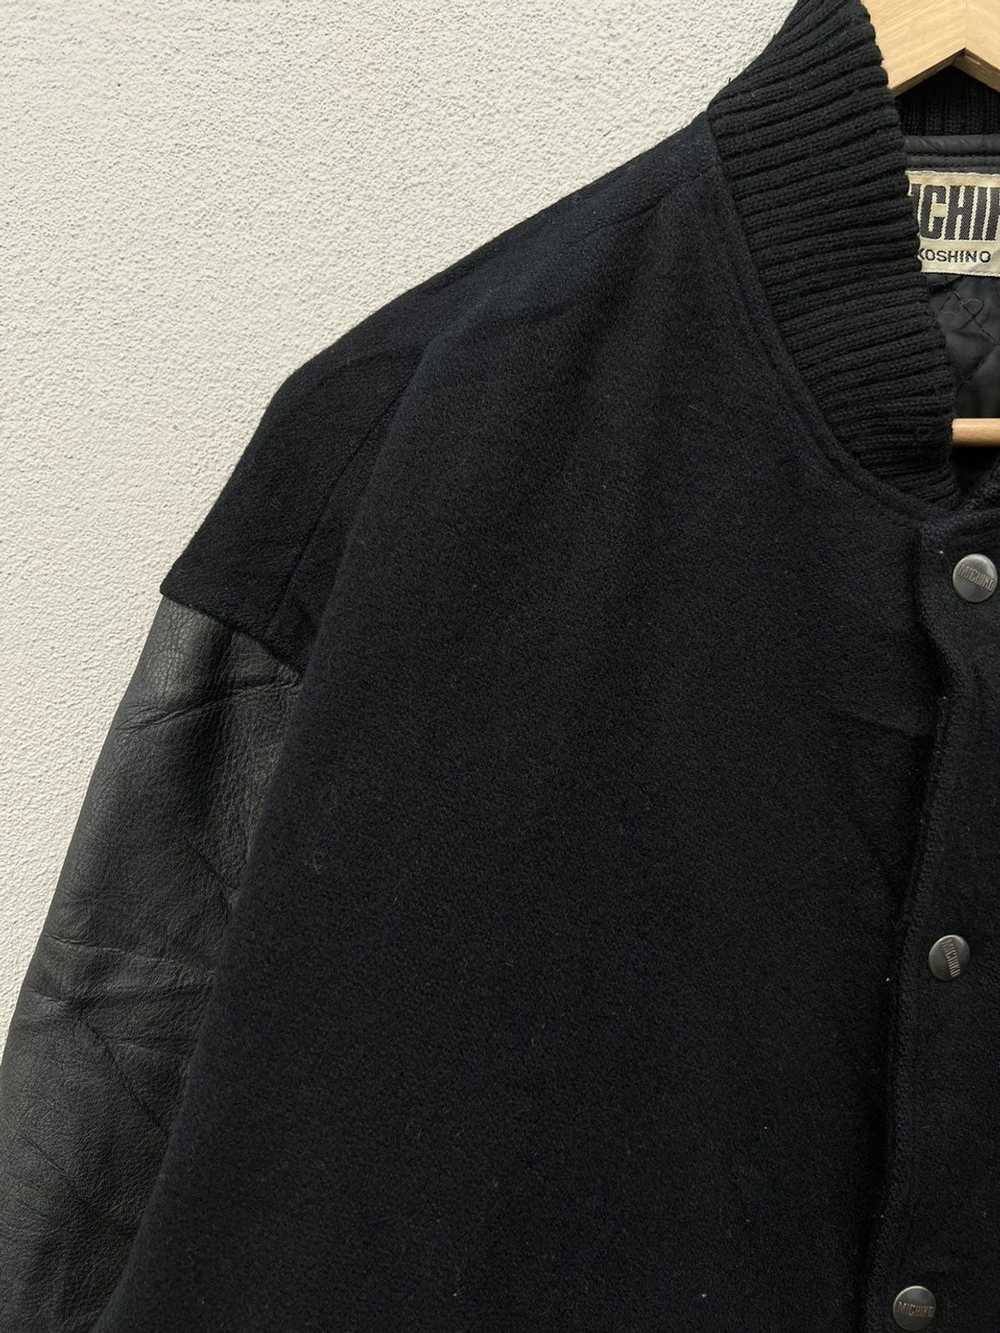 Leather Jacket × Michiko Koshino London × Varsity… - image 5